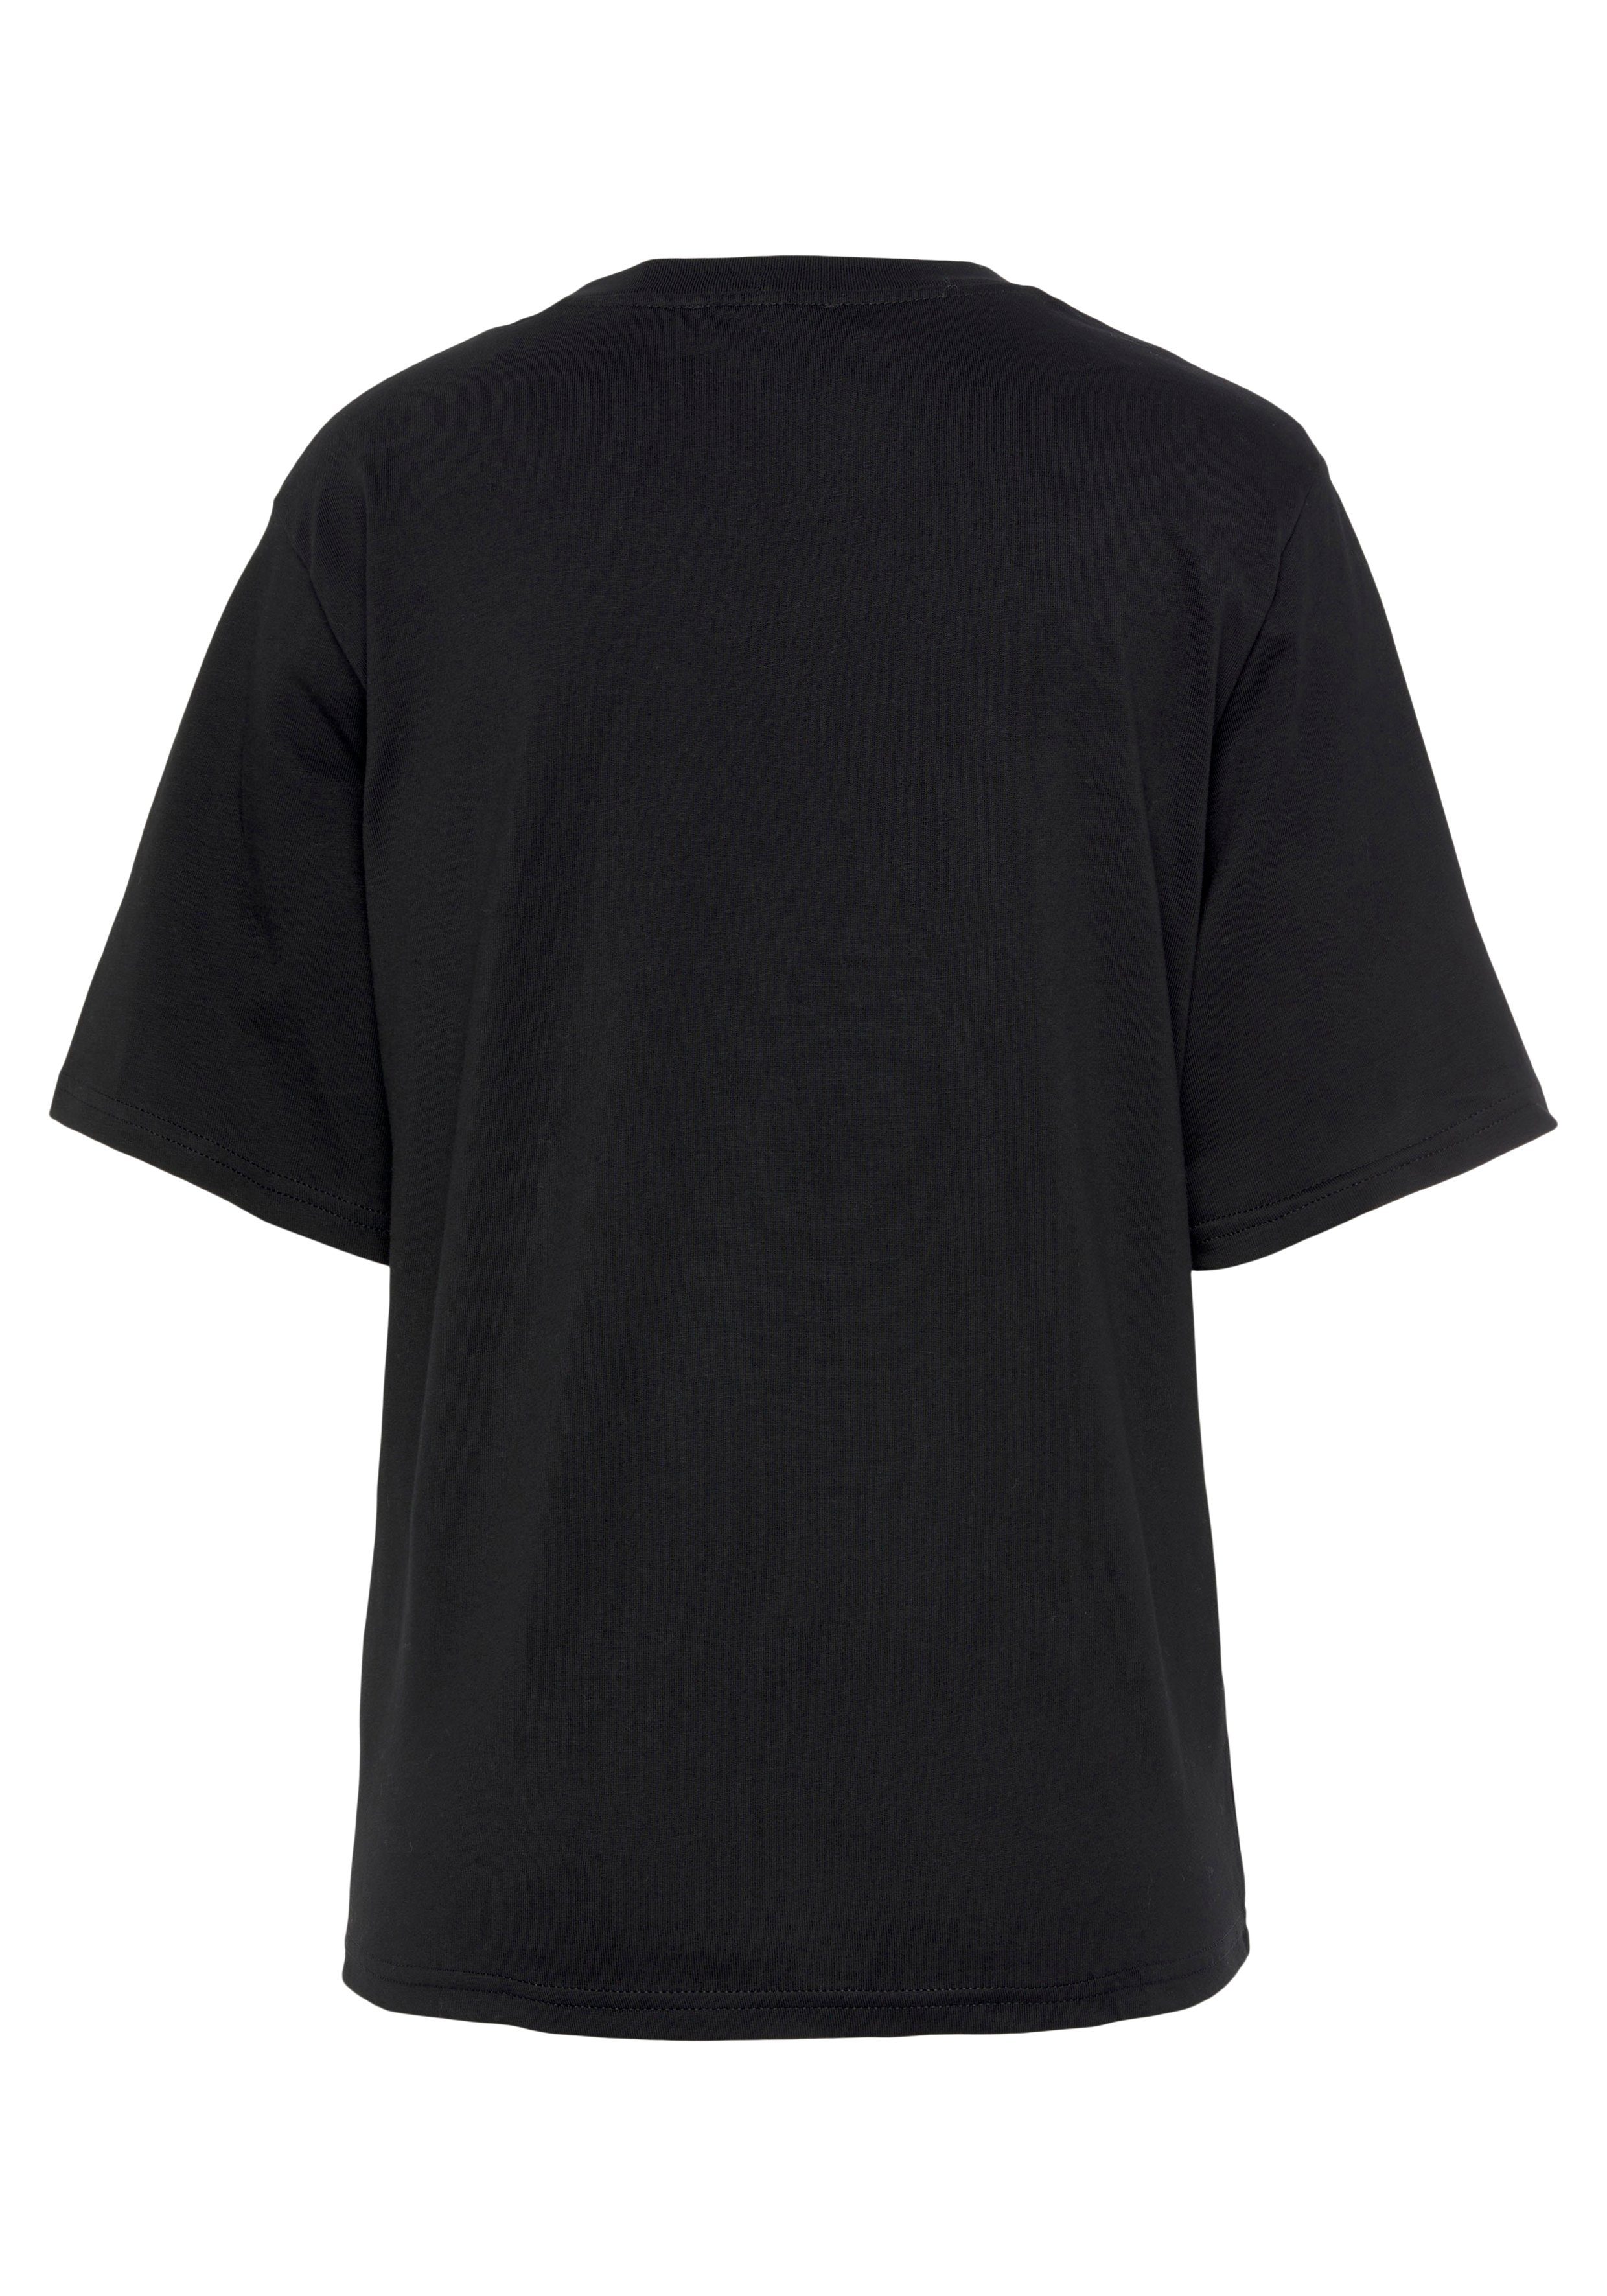 United Colors of Benetton T-Shirt mit Brust der Logodruck schwarz auf